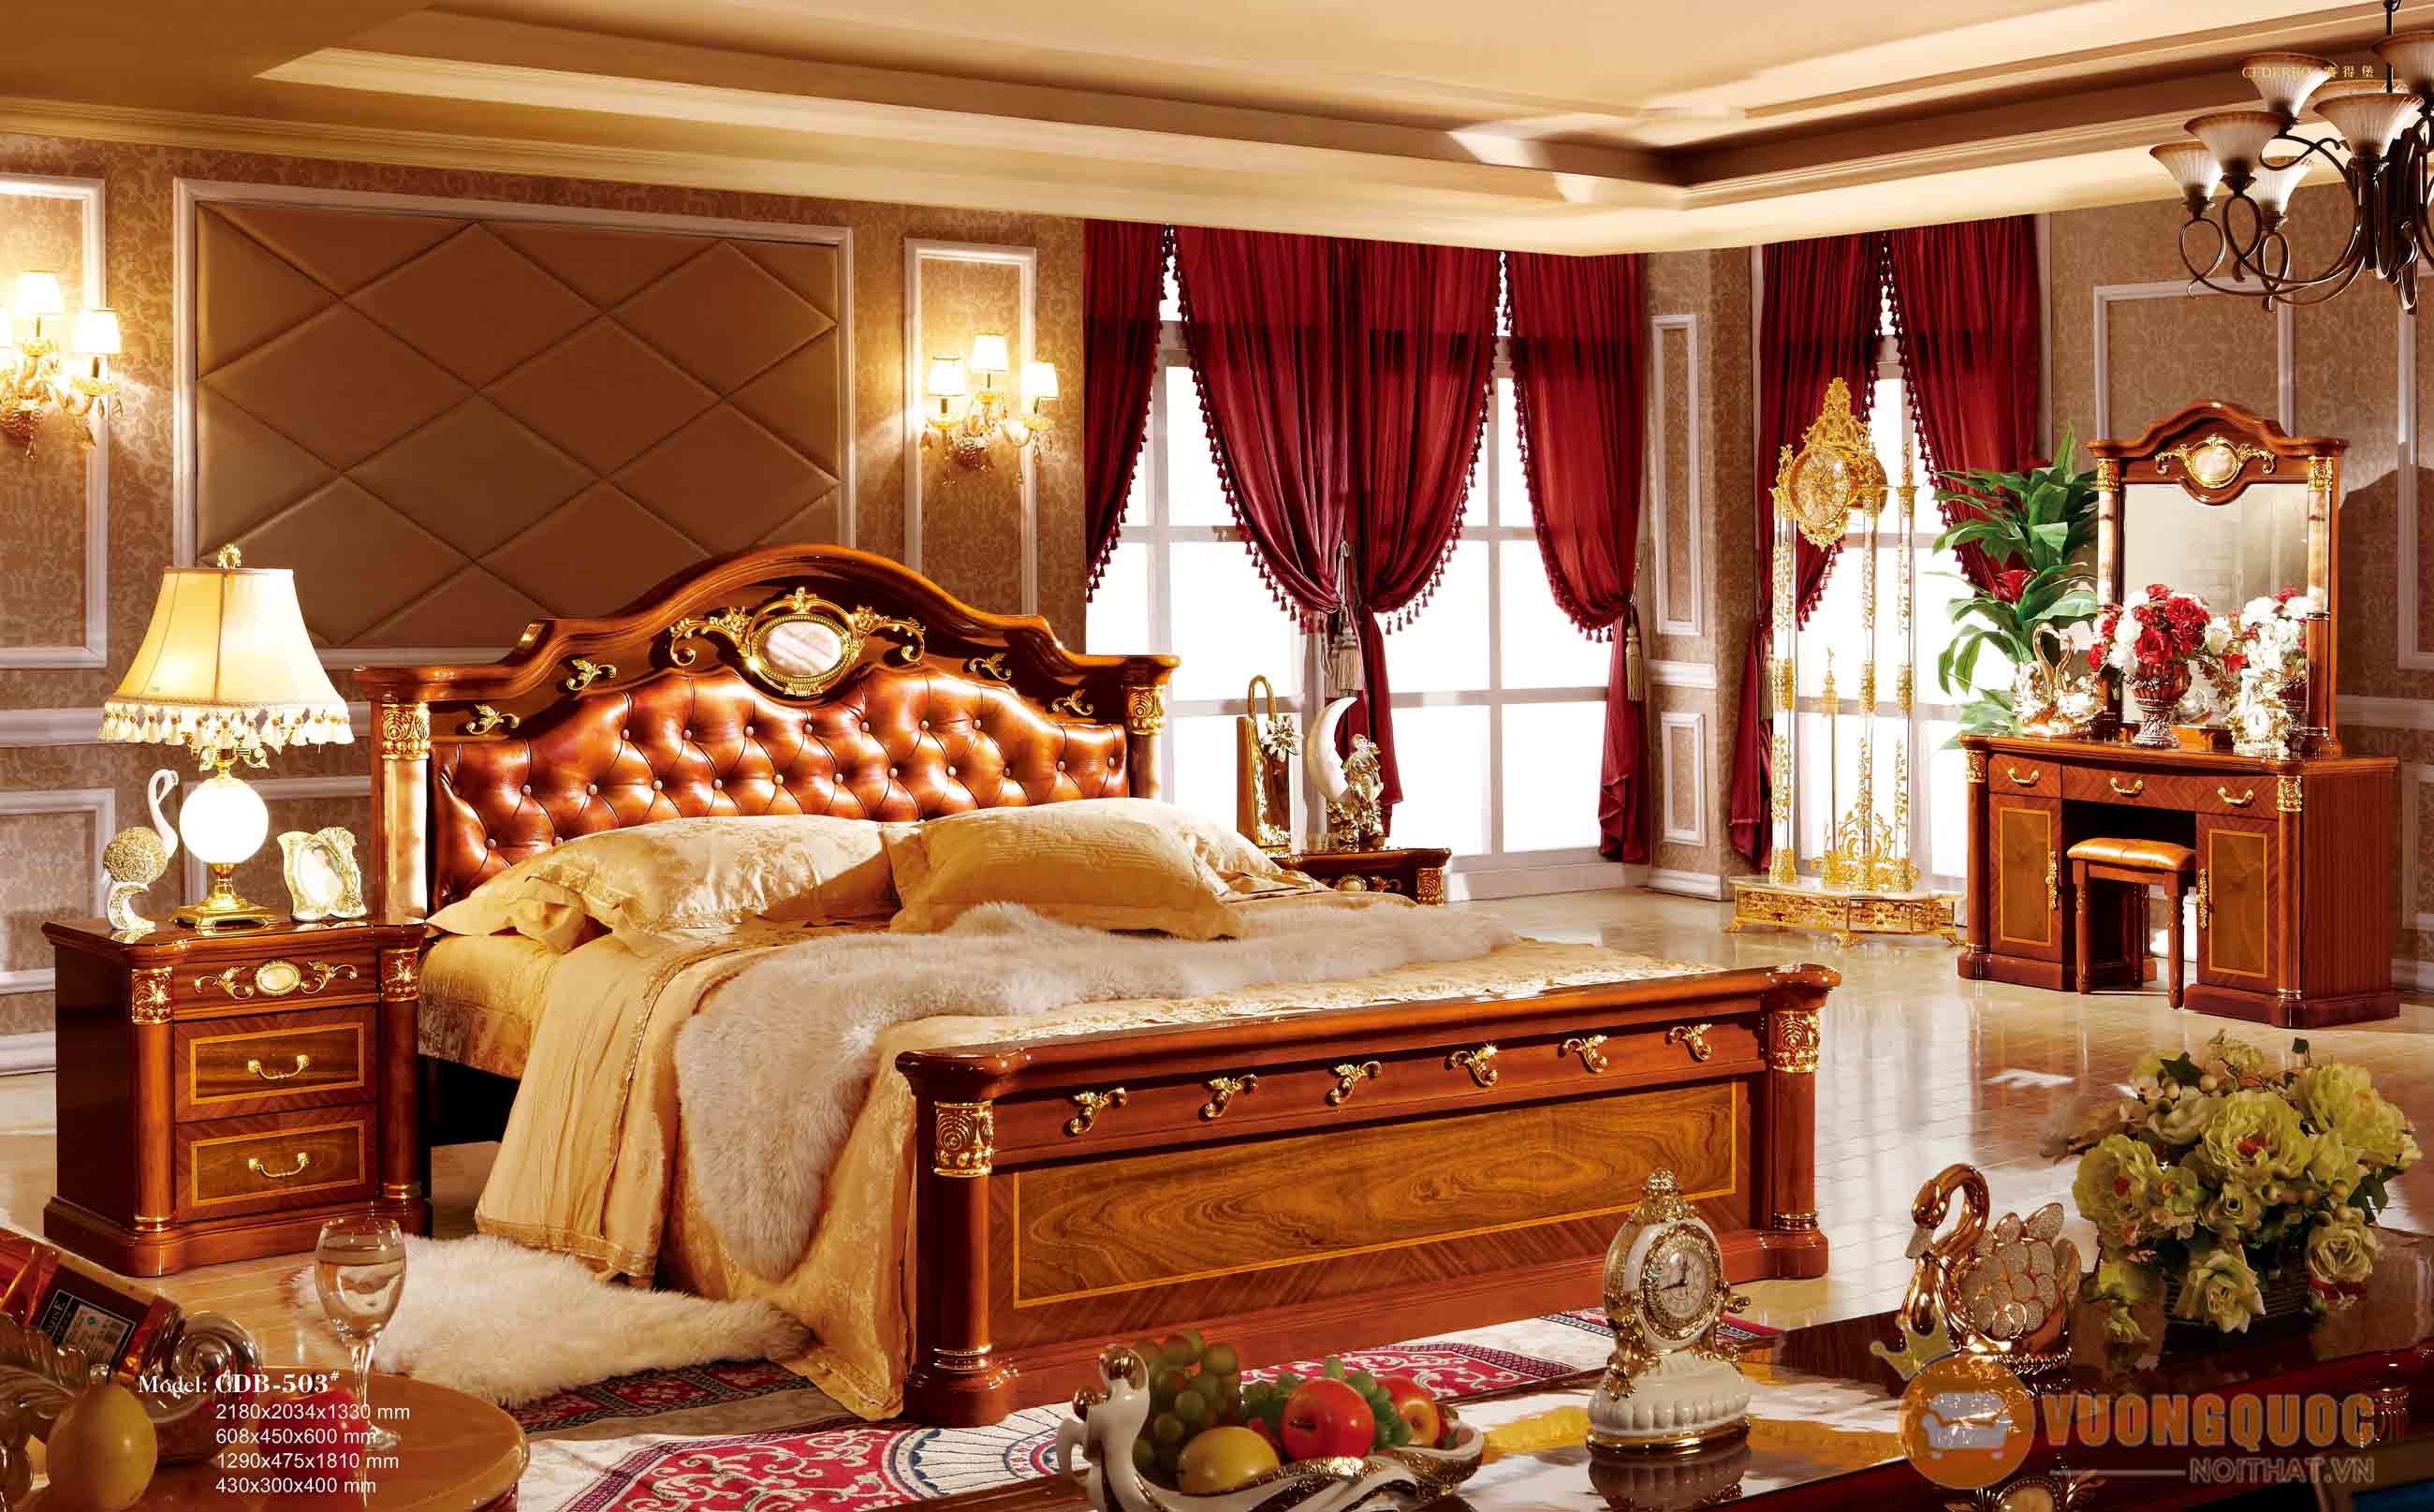 Giường ngủ cổ điển có giá trên 30.000.000 đồng